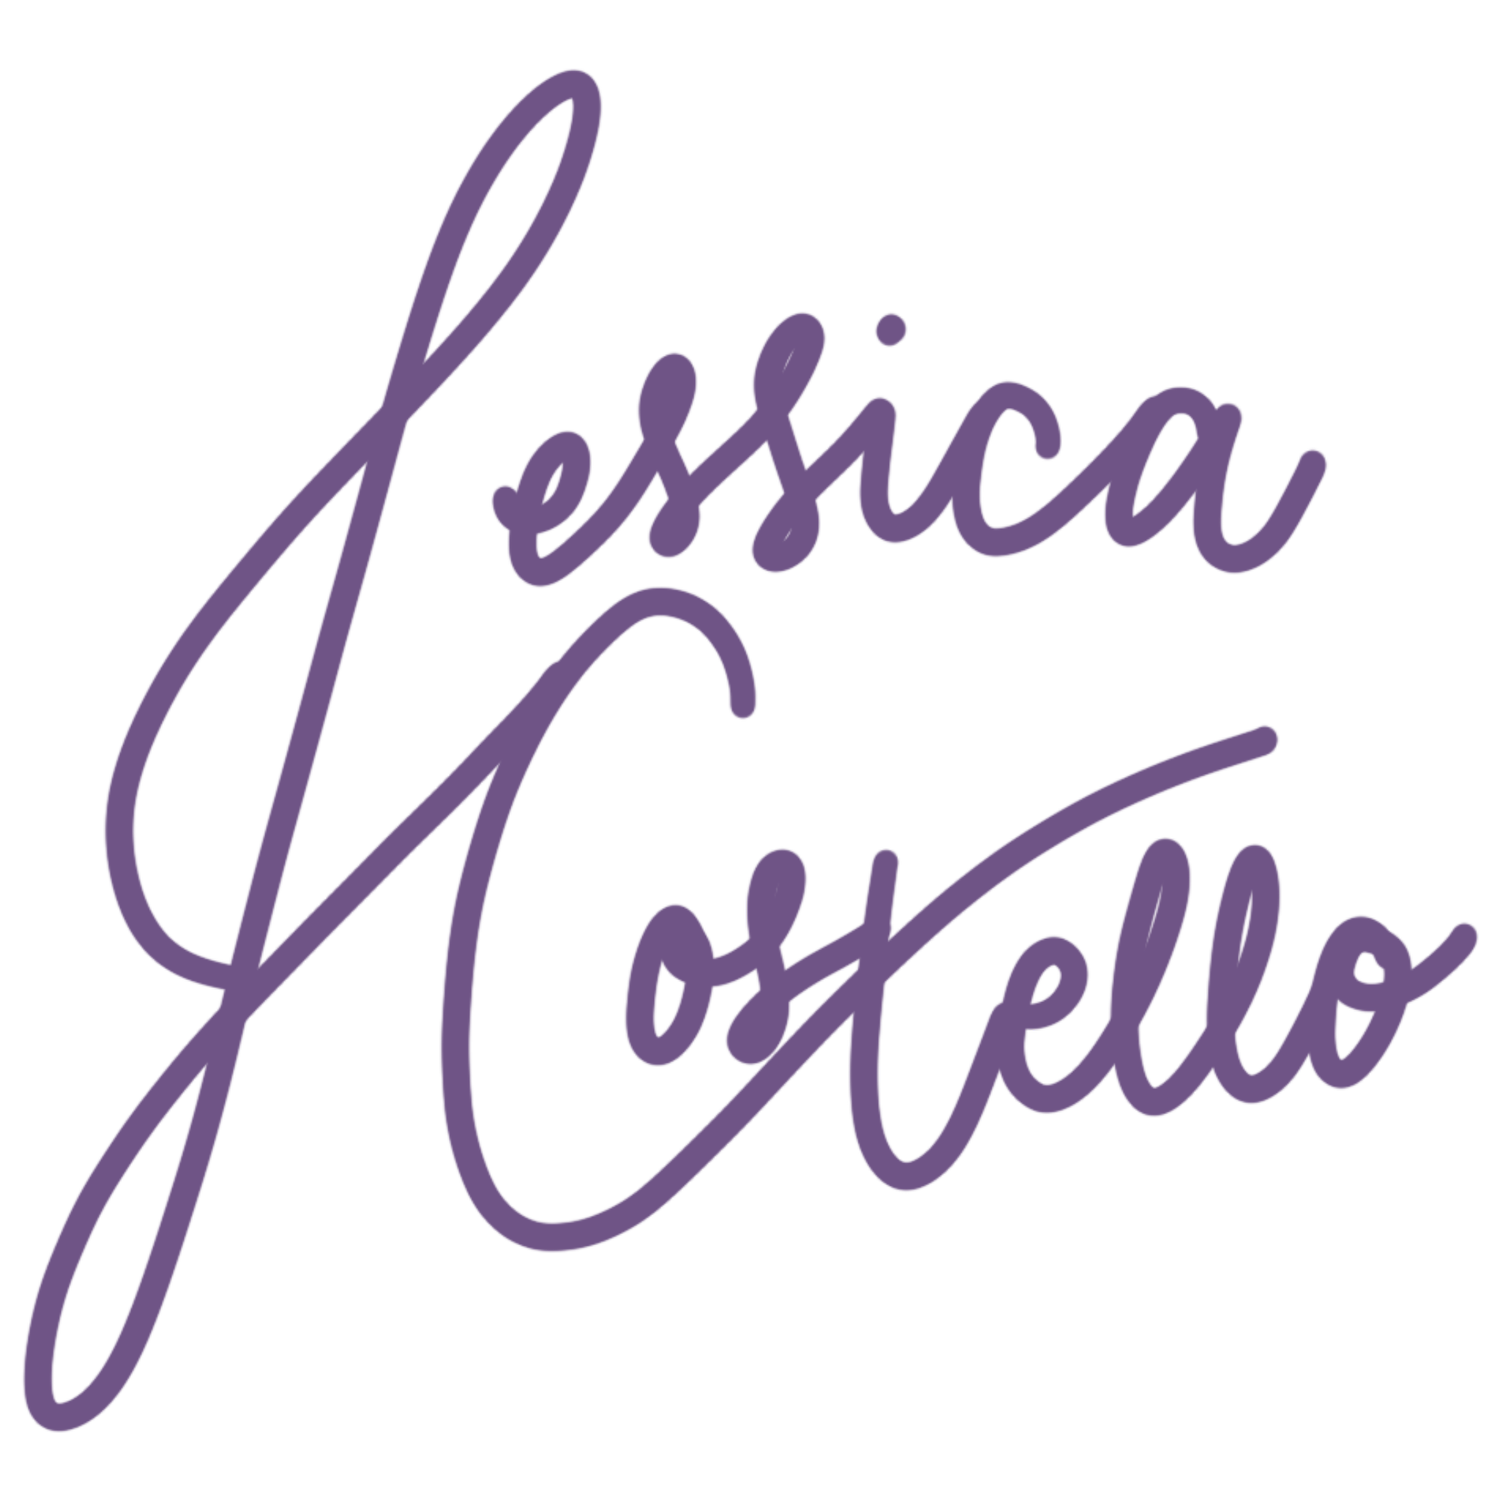 Jessica Costello